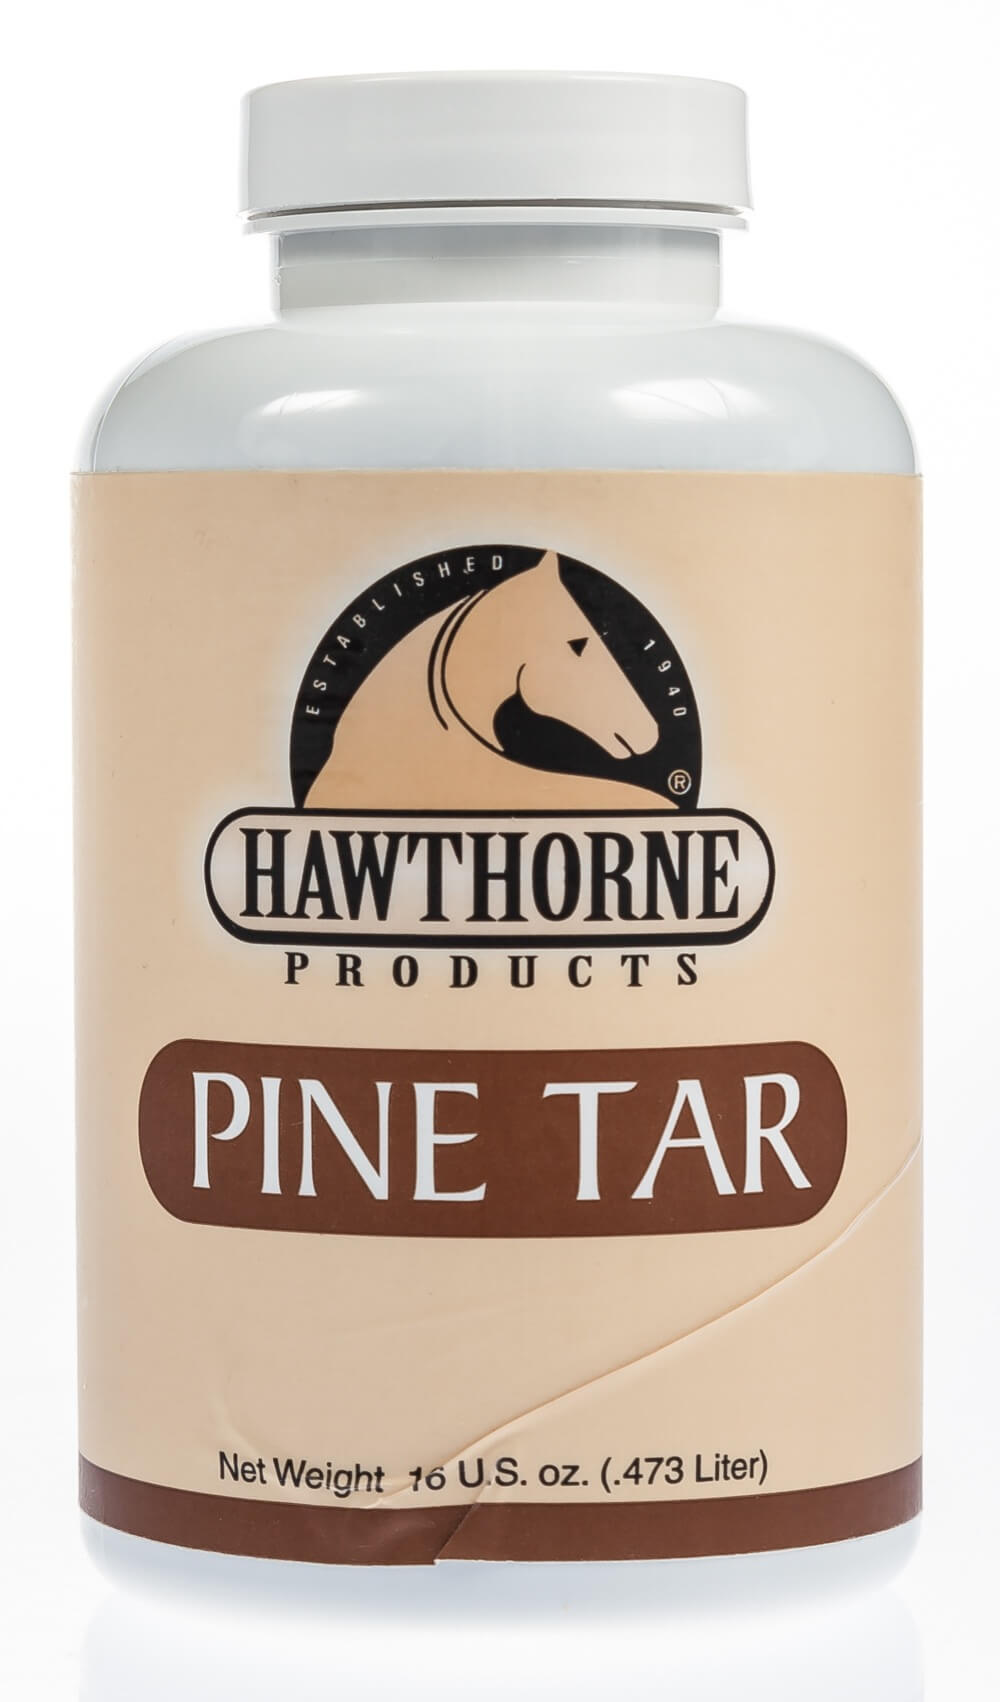 Pine Tar  Santa Cruz Animal Health